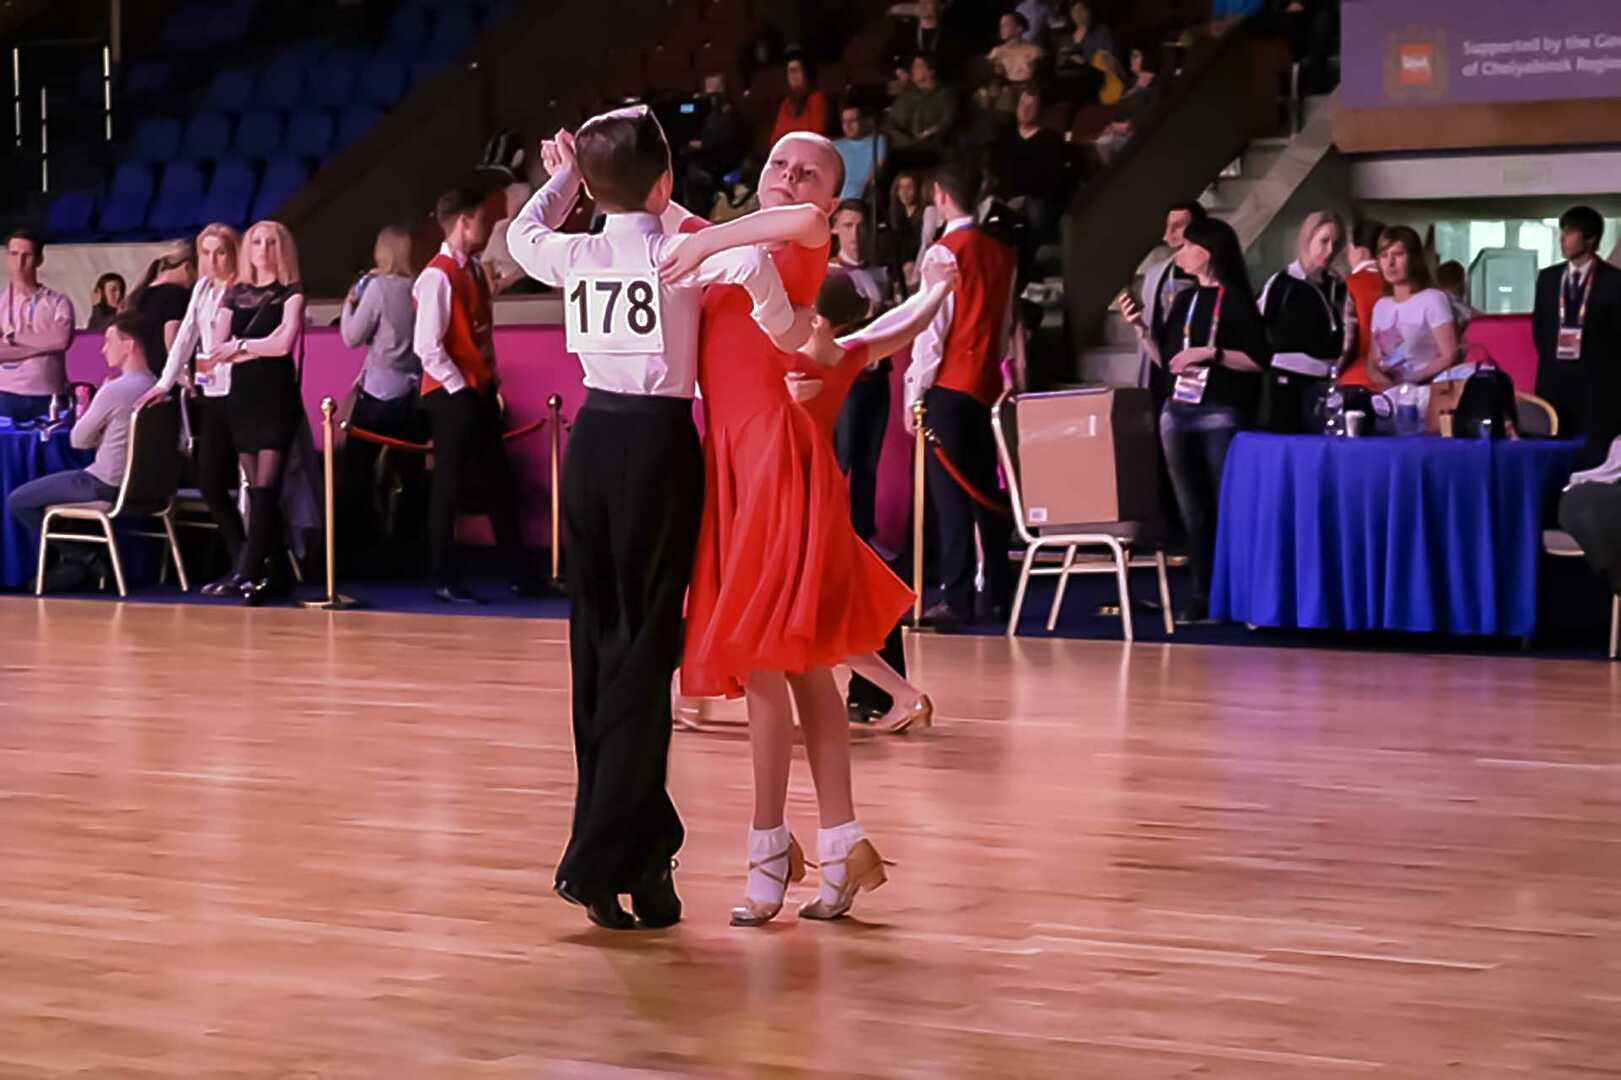 Кубок губернатора челябинской области по танцевальному спорту